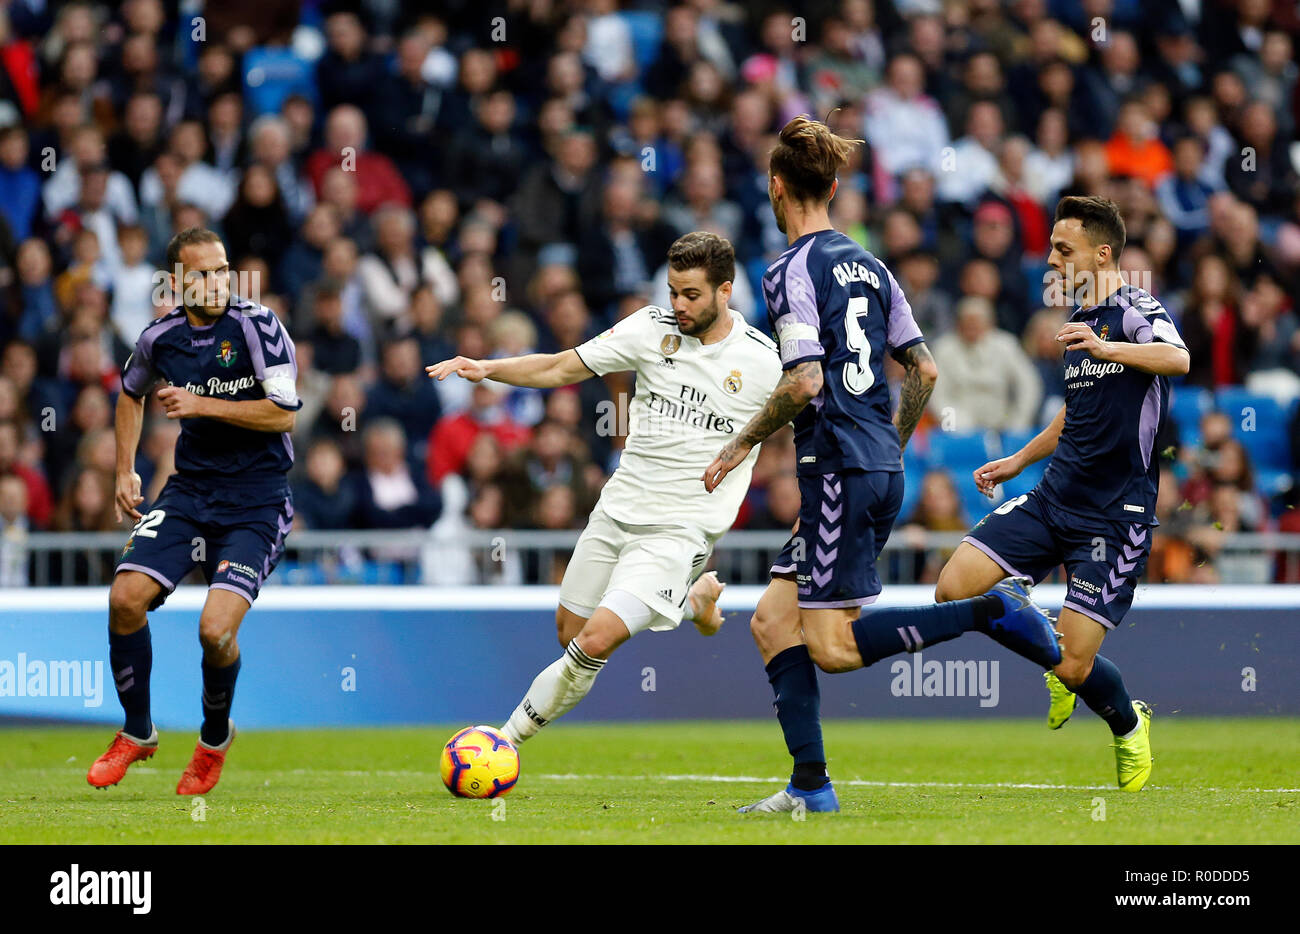 Nacho (Real Madrid) visto in azione durante la Liga match tra il Real Madrid e il Real Valladolid all'Estadio Santiago Bernabéu. Punteggio finale Real Madrid 2-0 Valladolid. Foto Stock